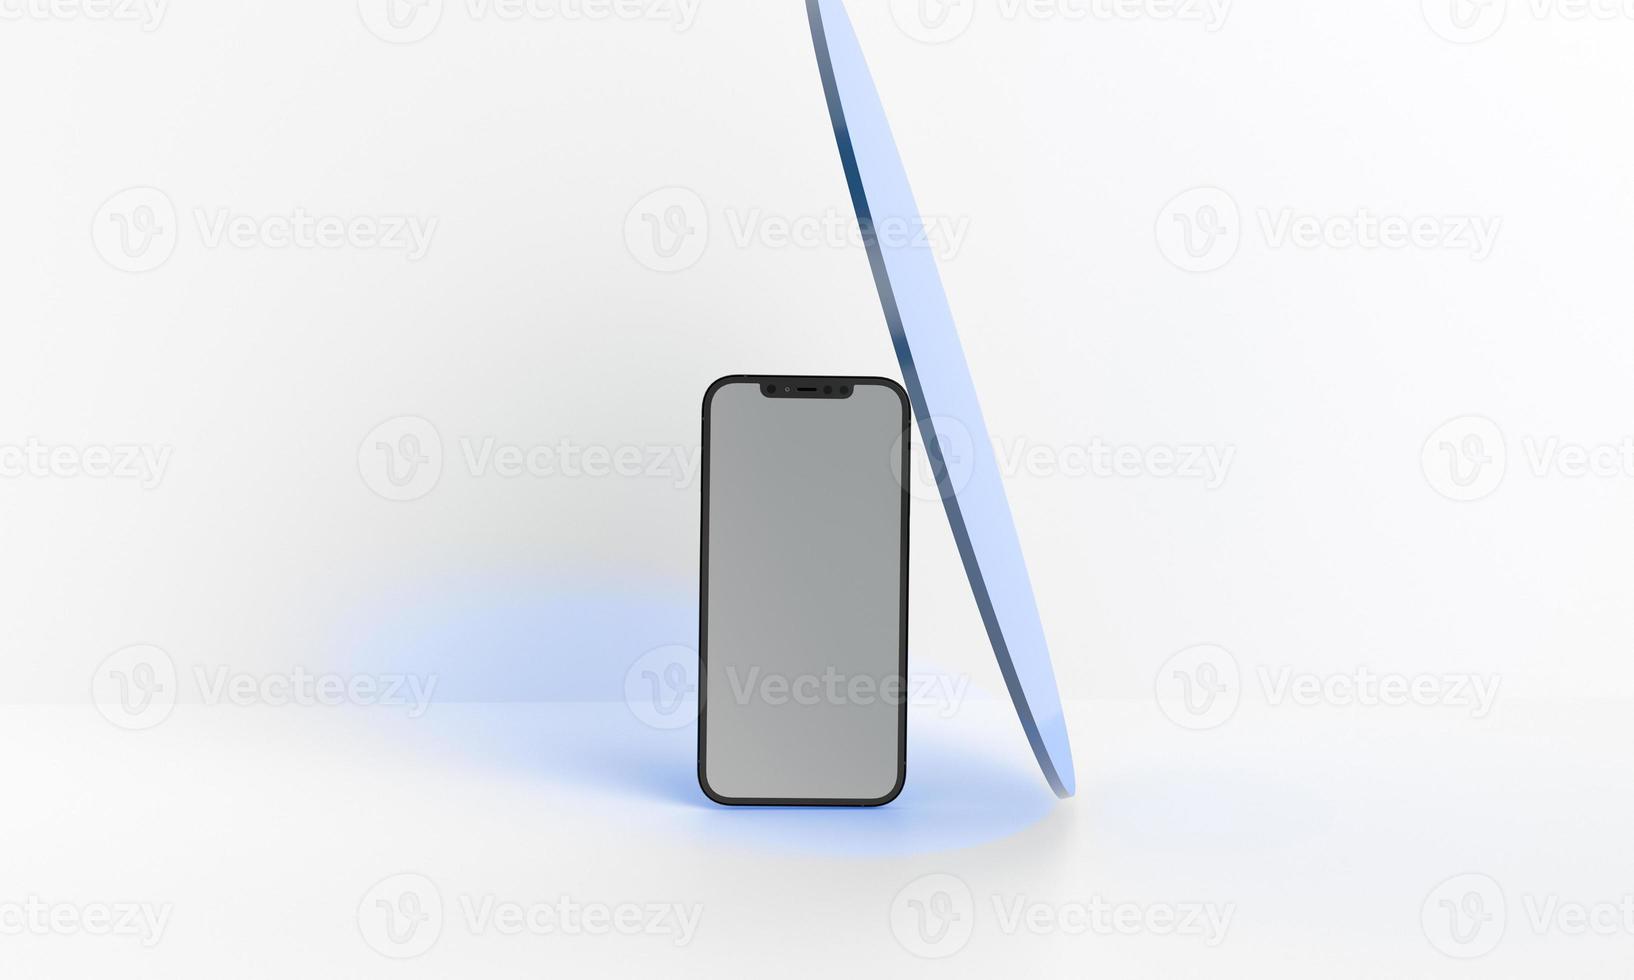 3d render ilustração mão segurando o smartphone branco com tela cheia e moldura moderna menos design - isolado no fundo branco foto